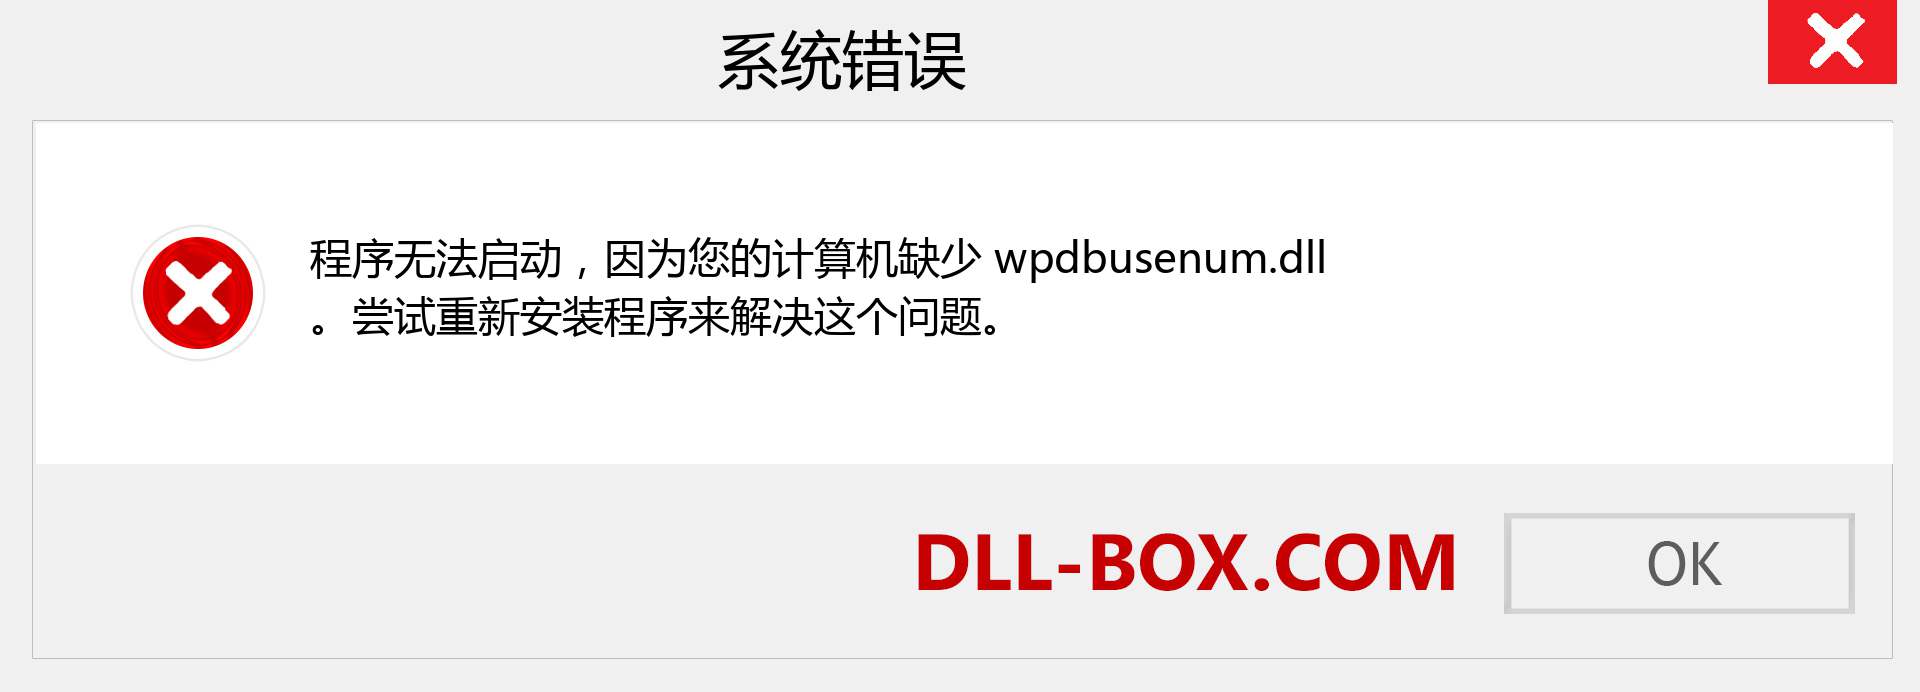 wpdbusenum.dll 文件丢失？。 适用于 Windows 7、8、10 的下载 - 修复 Windows、照片、图像上的 wpdbusenum dll 丢失错误